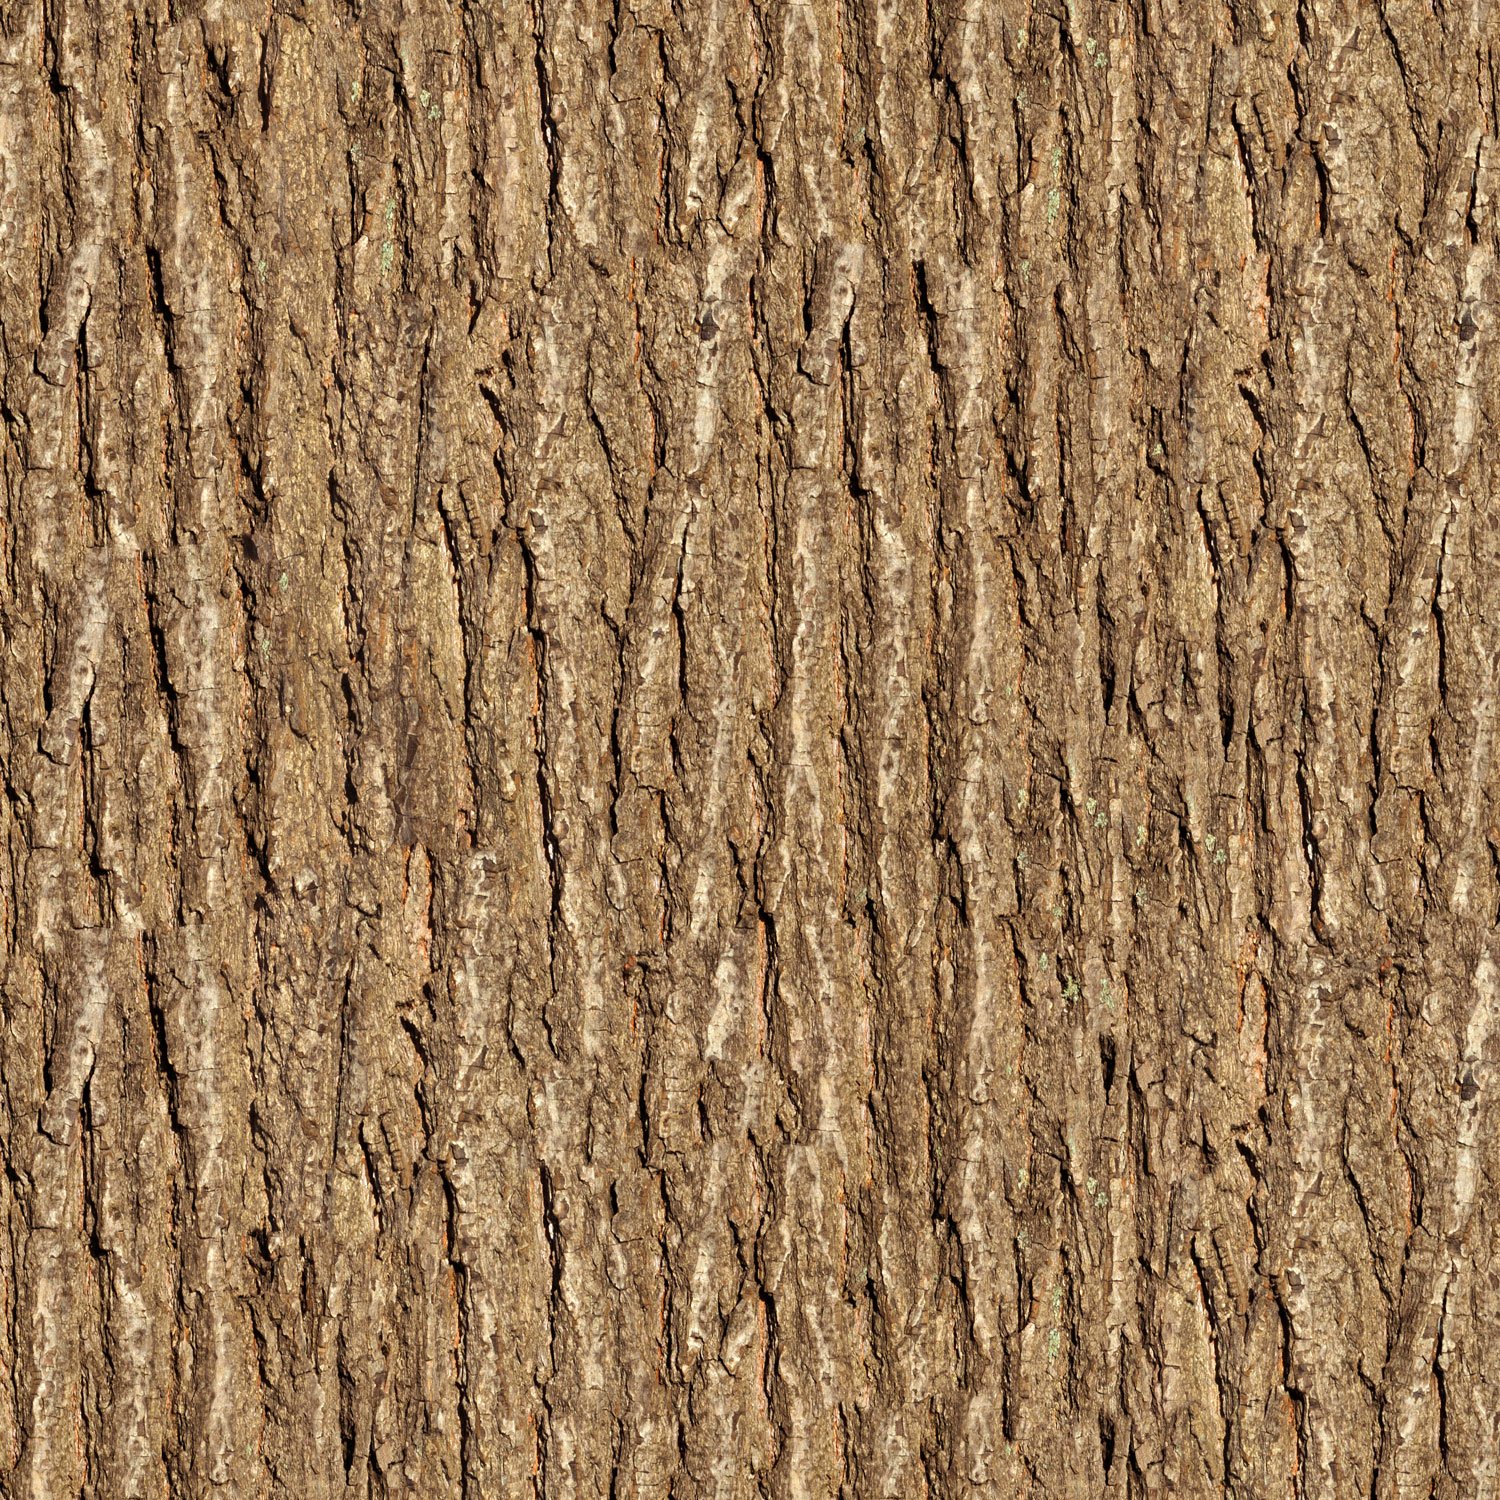 Wooden Tree Texture Wallpaper